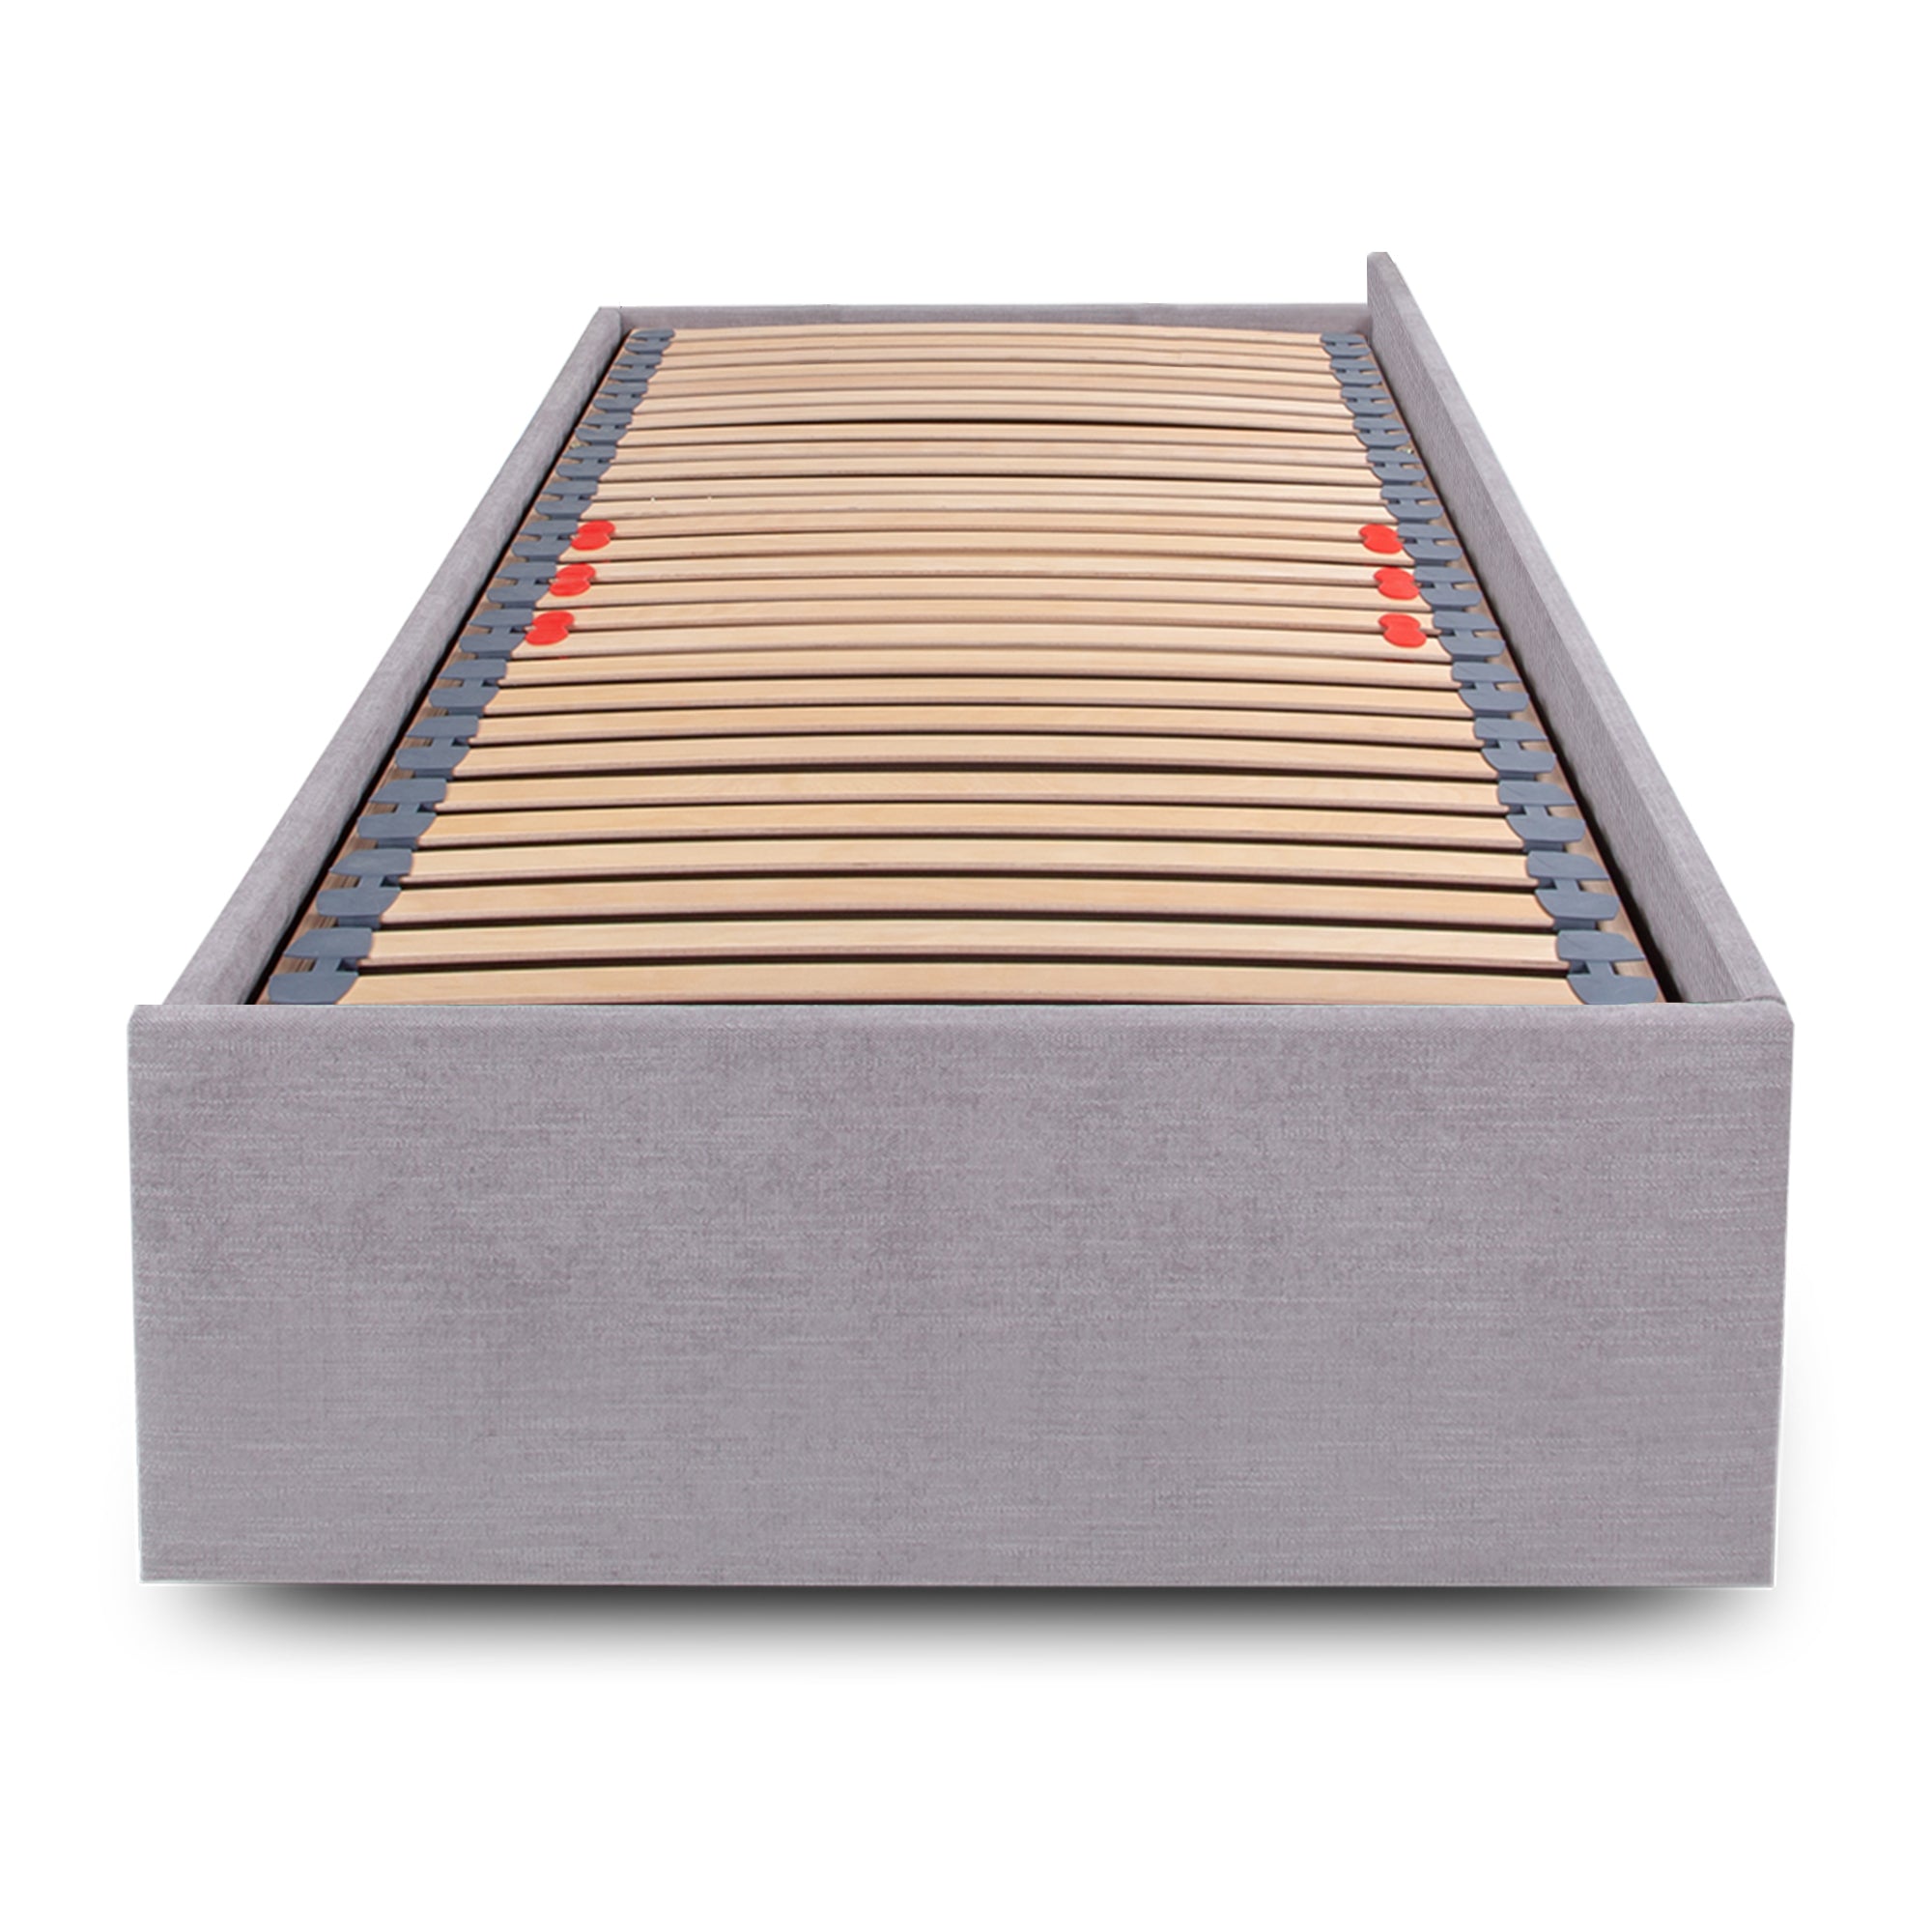 Megaro Corner 2ft 6 UK Small Single Upholstered Bed Frame